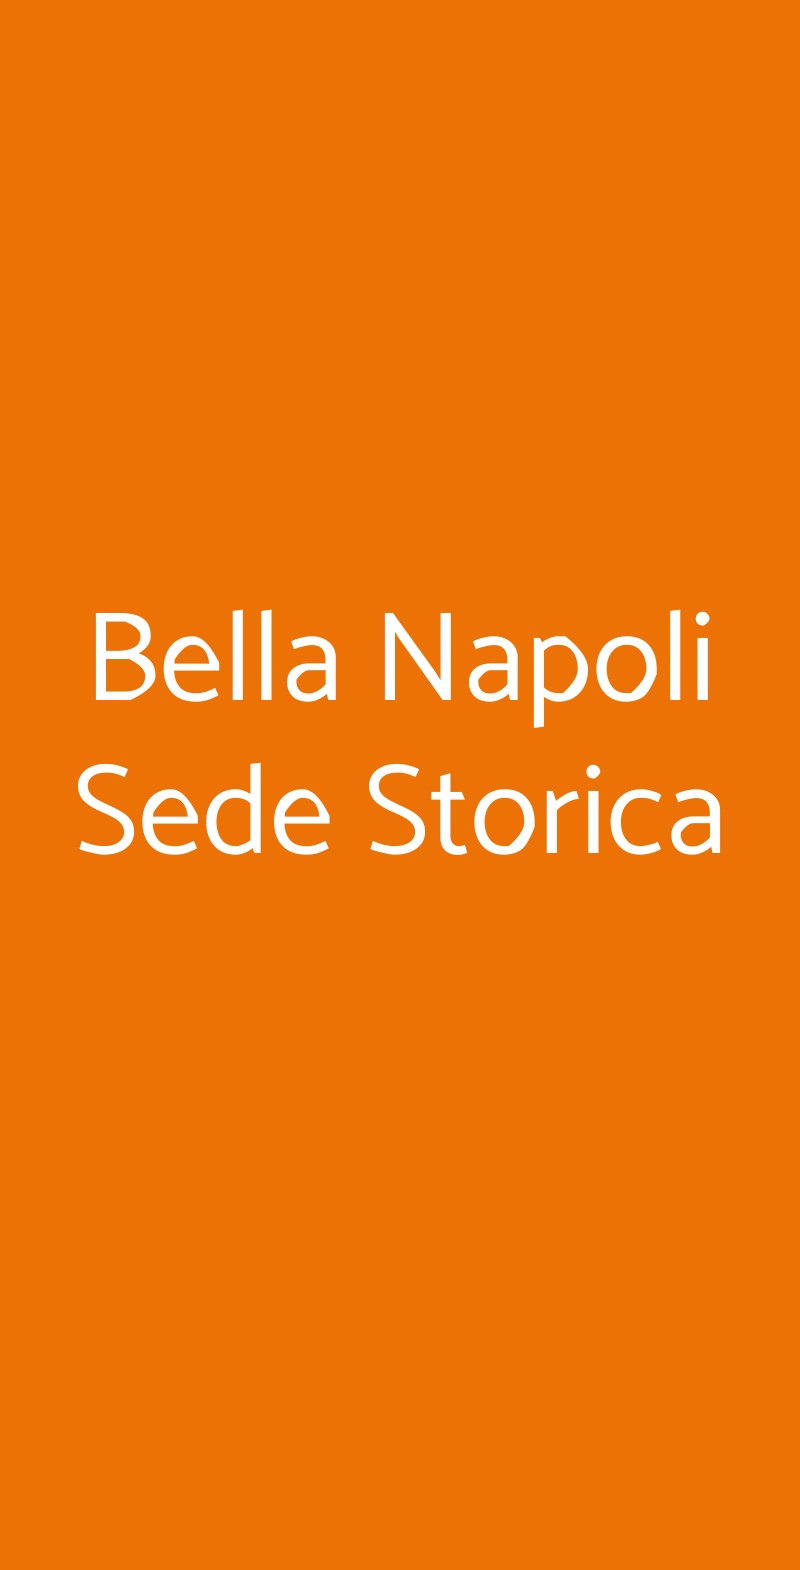 Bella Napoli Sede Storica Verona menù 1 pagina